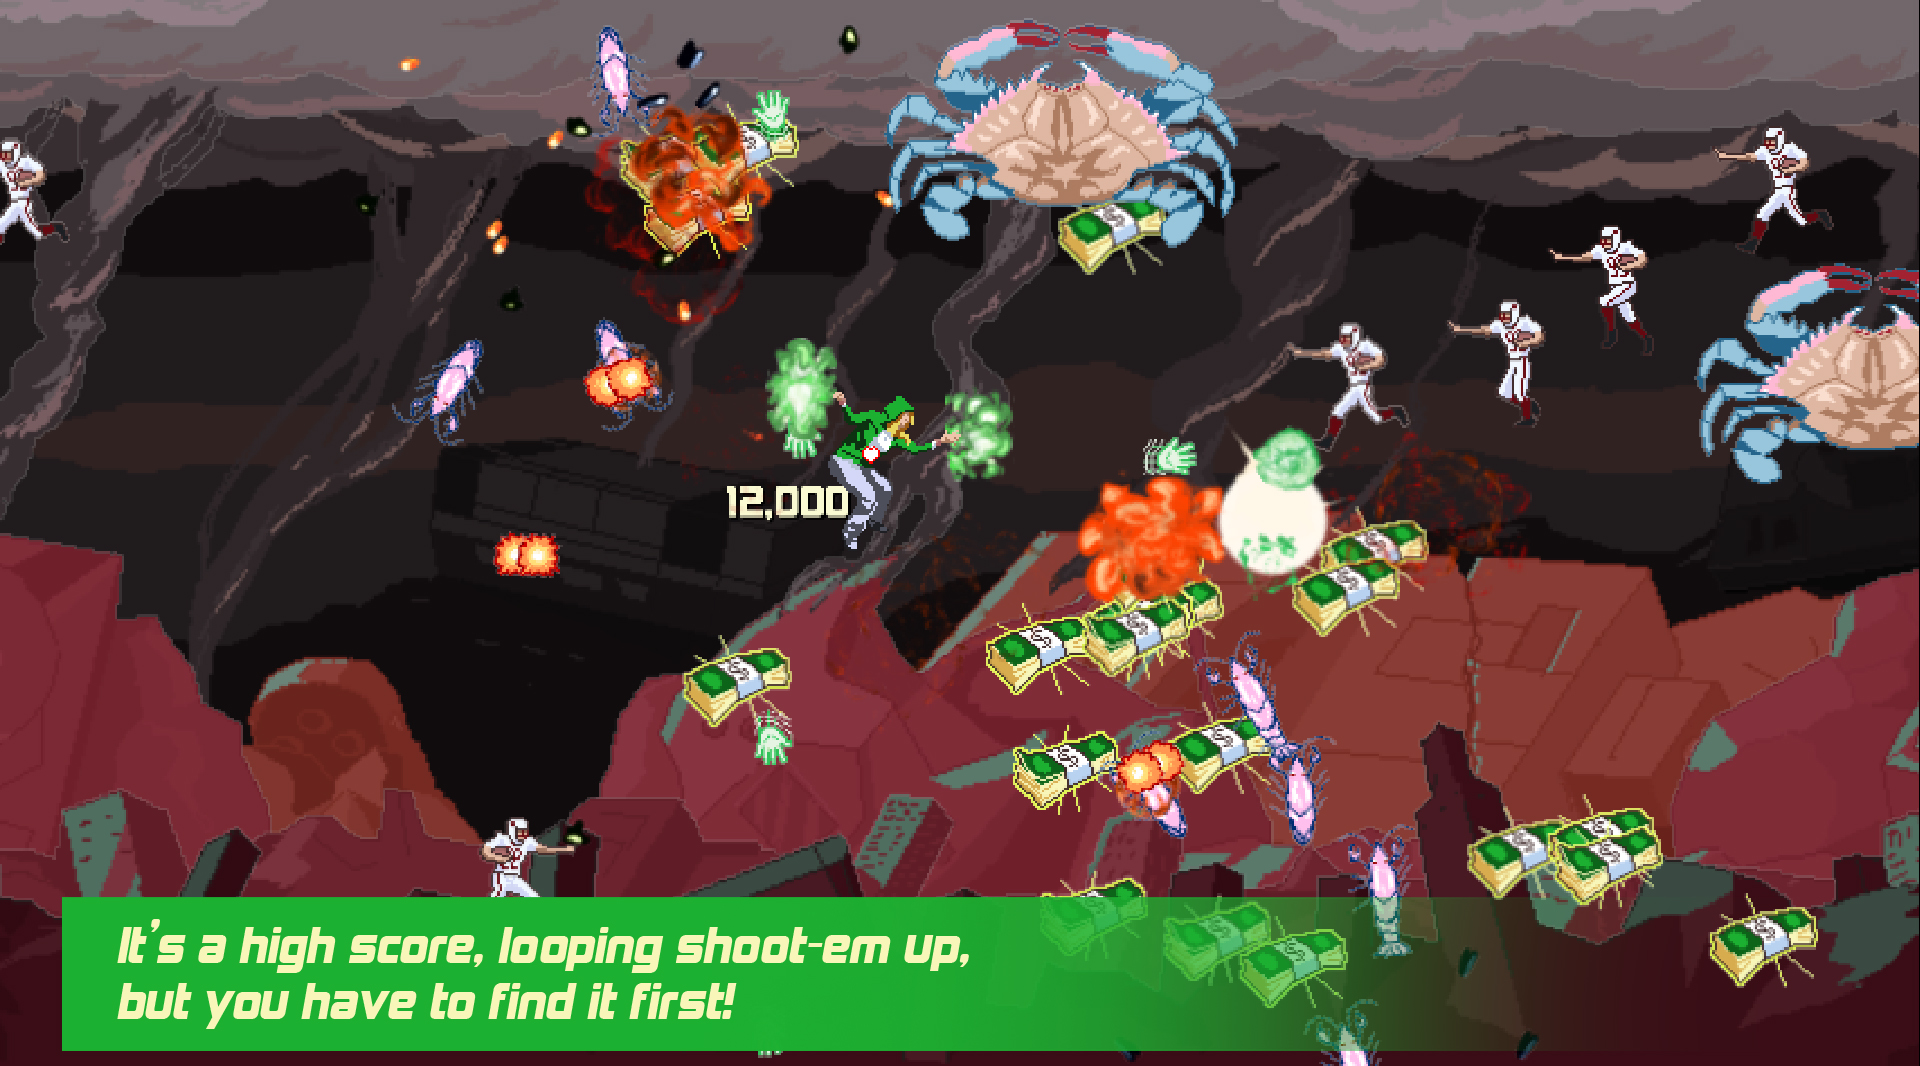 Game Type screenshot